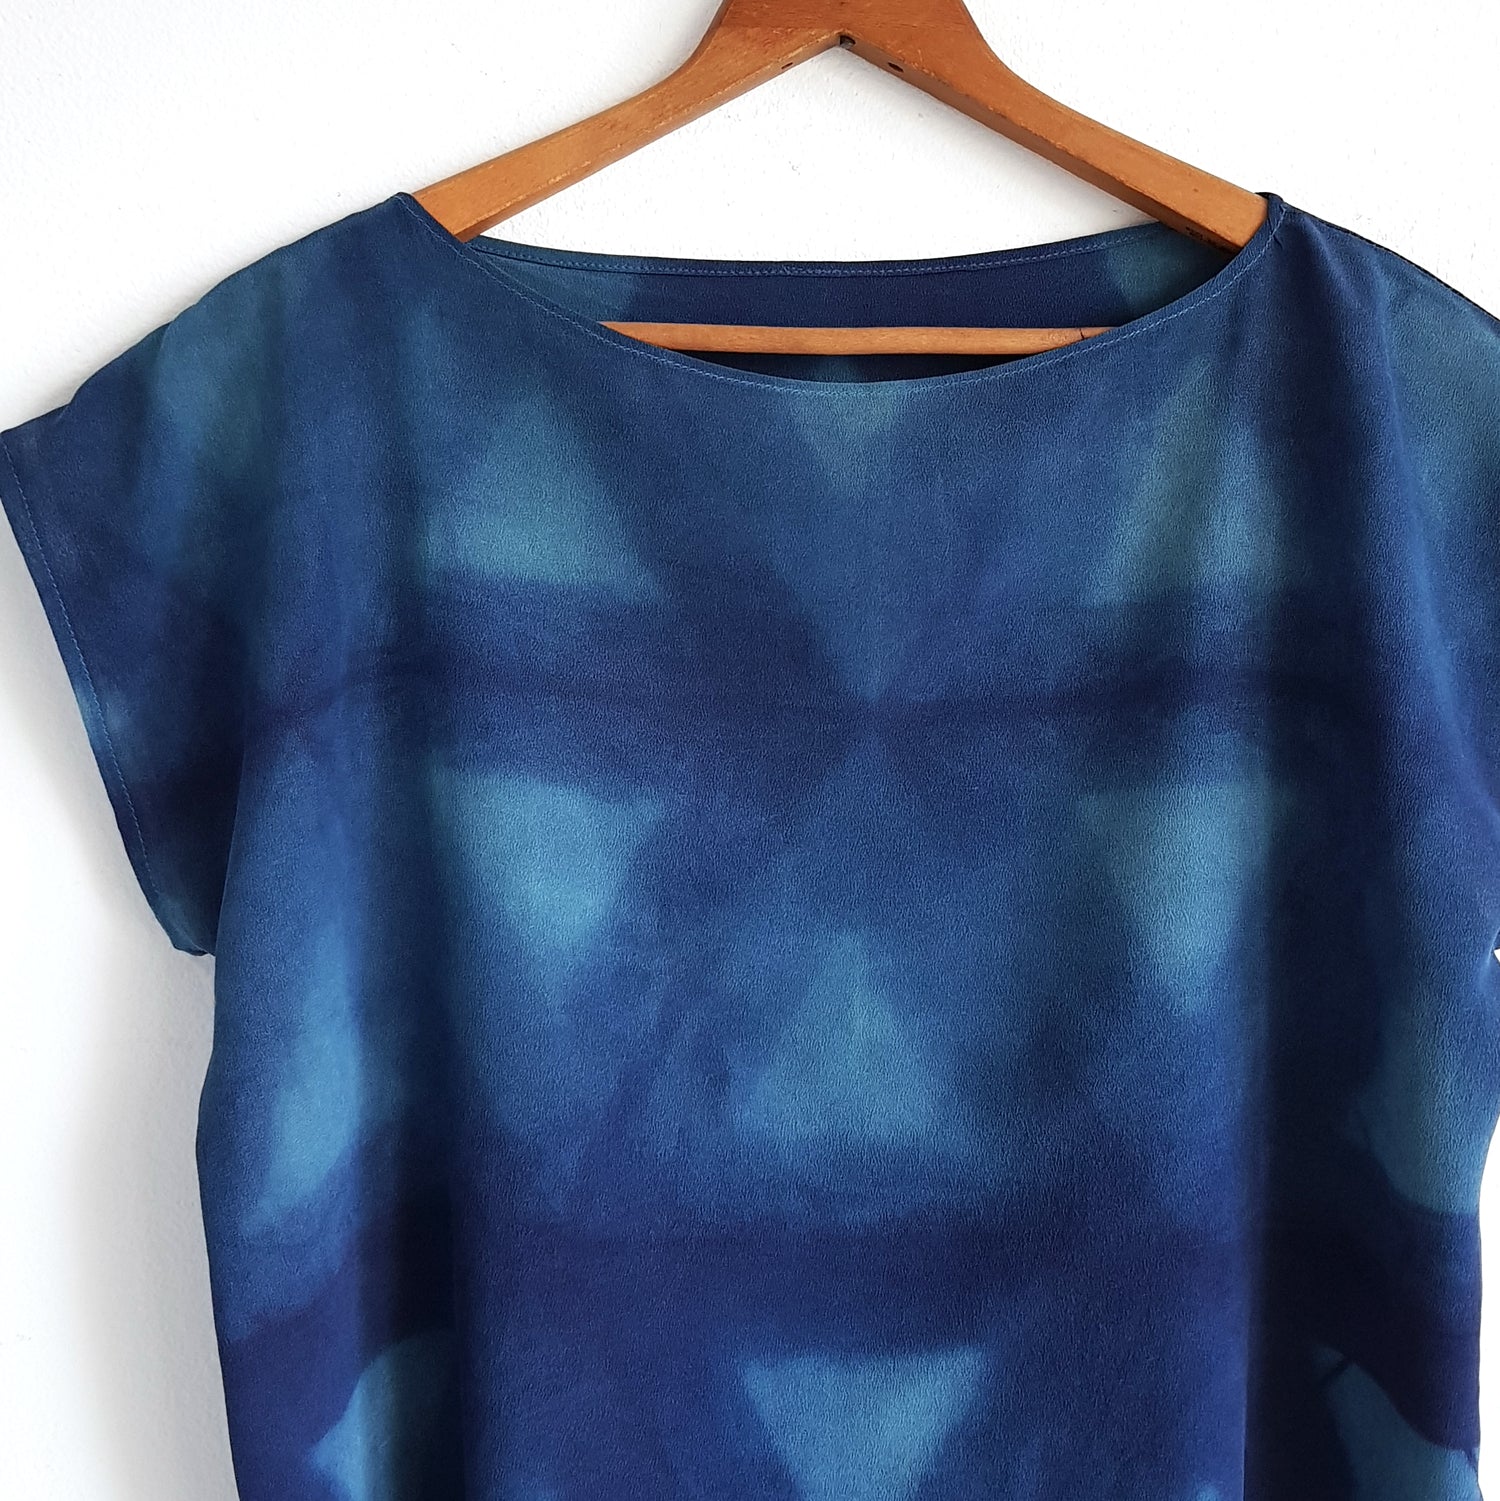 TRIANGLE. indigo silk tee. Organic dye silk shirt